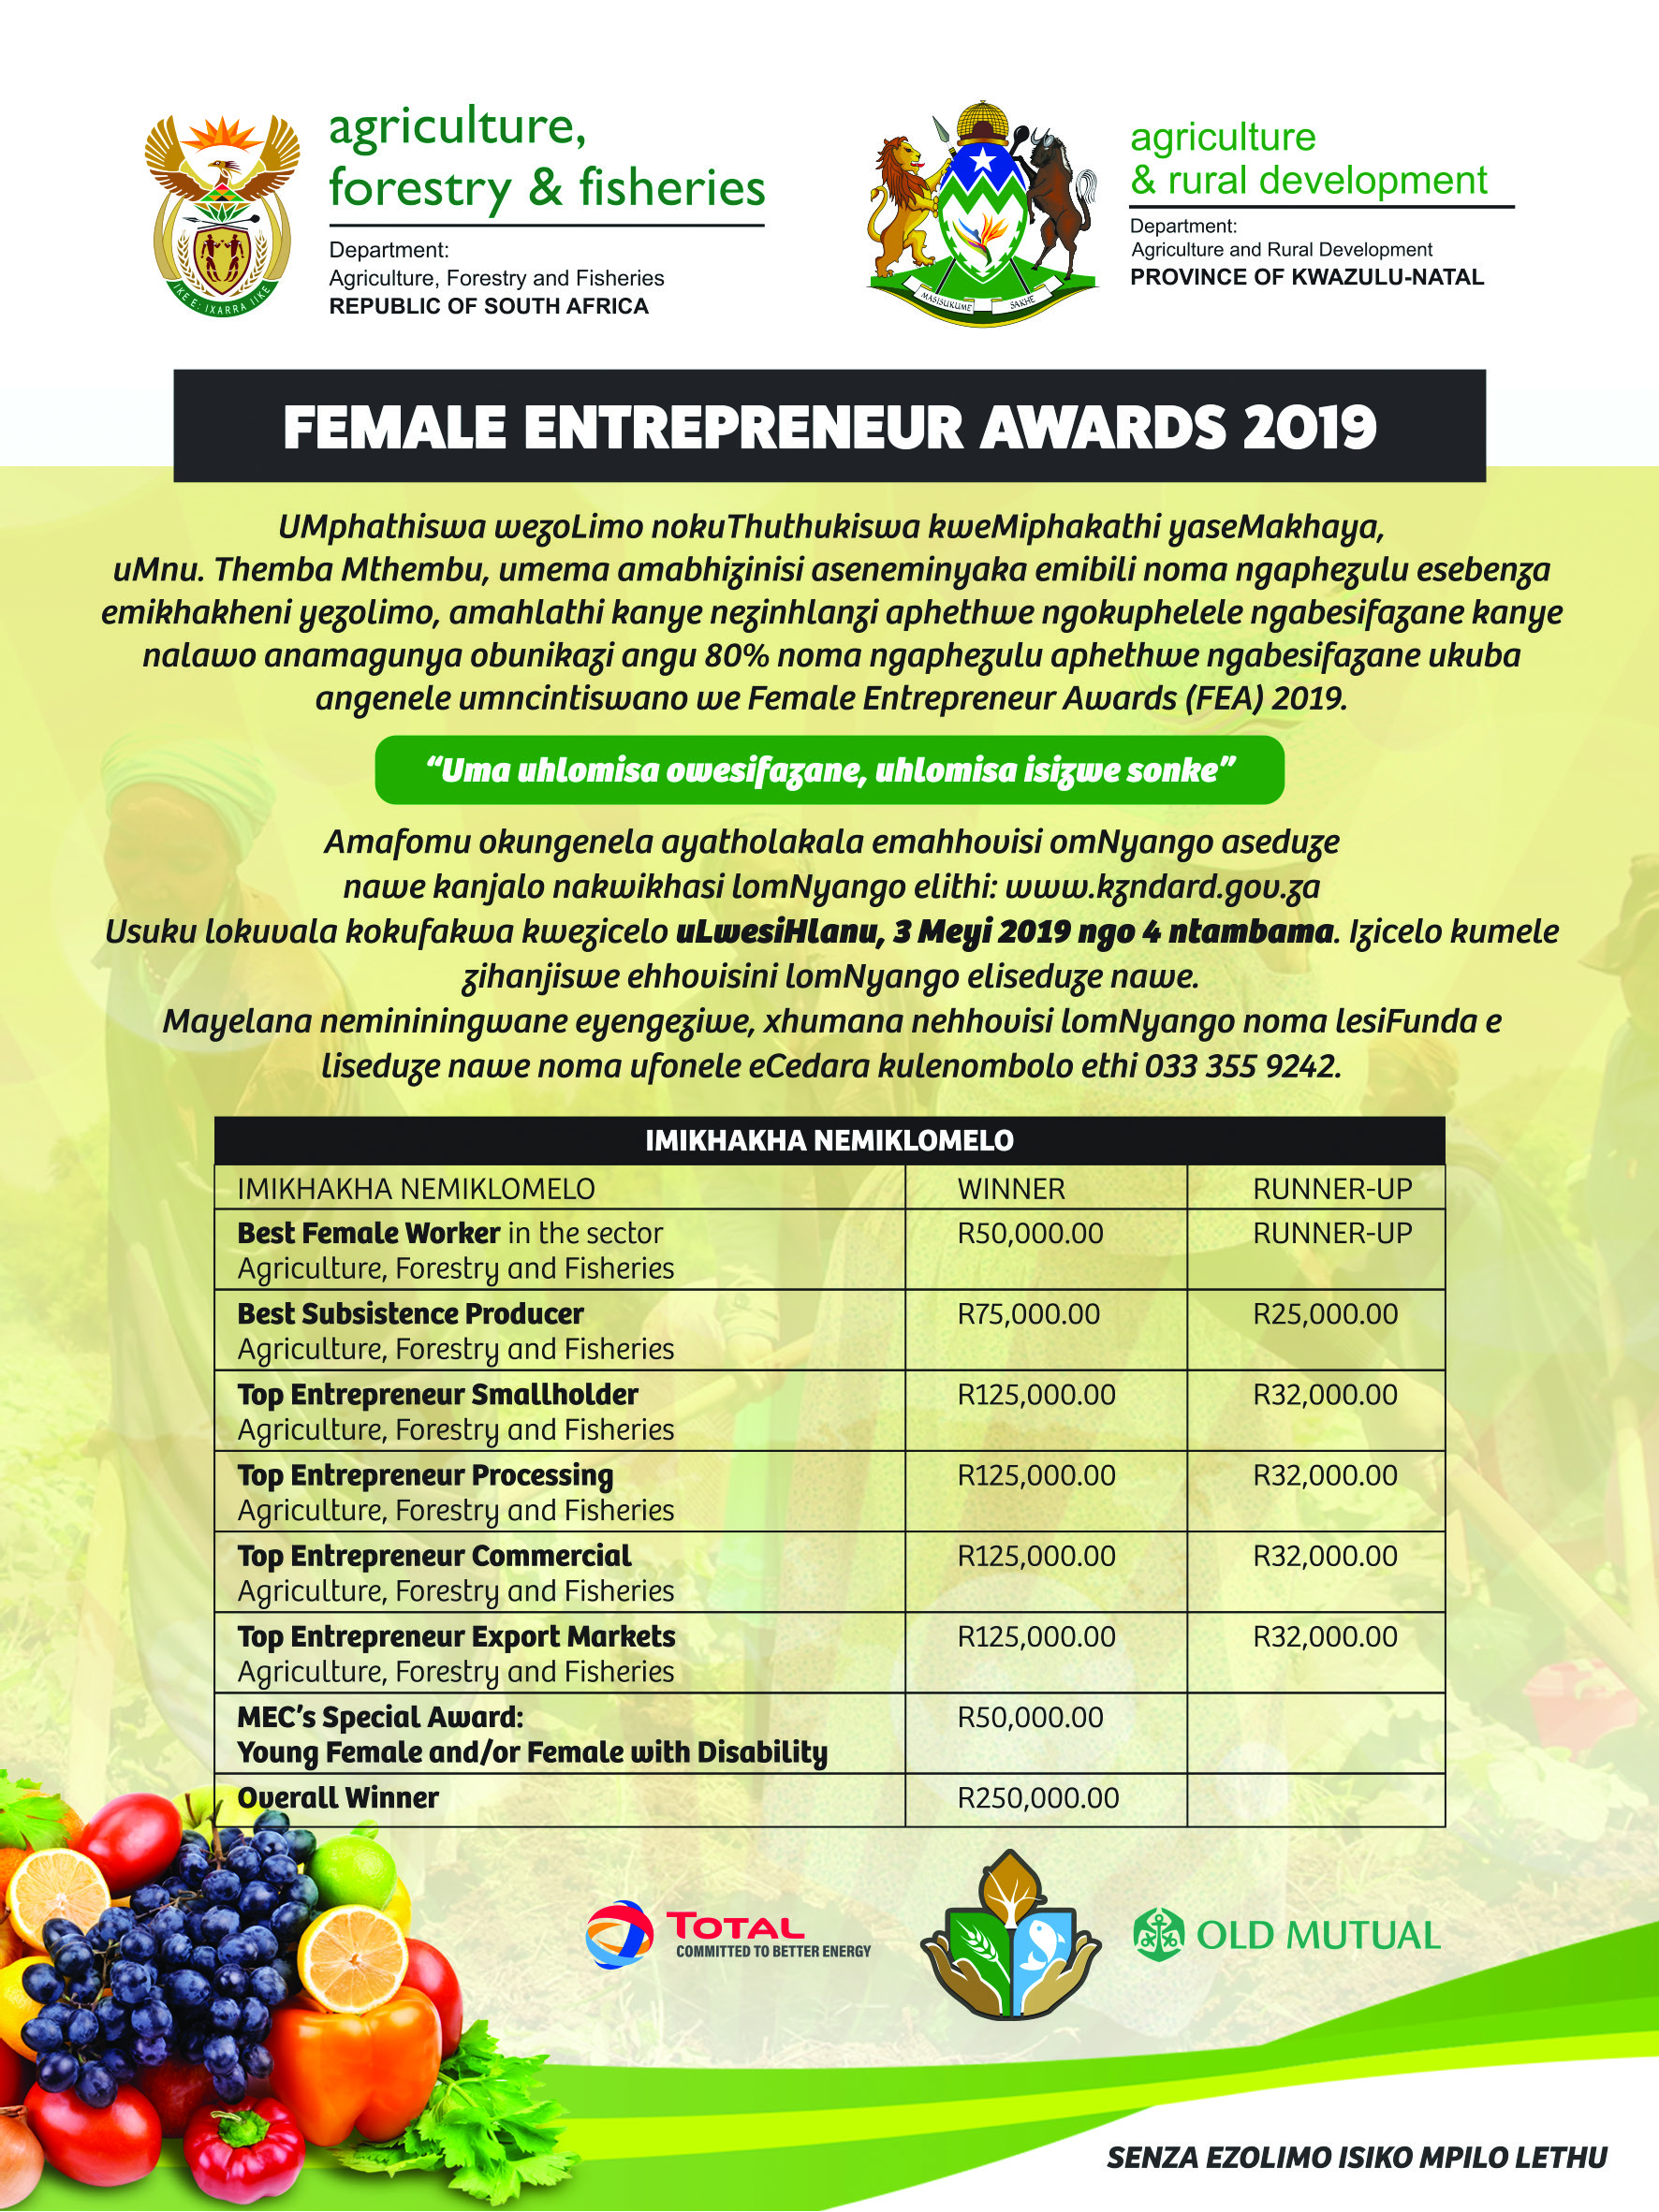 Female Entrepreneur Awards 2019 isiZulu advert